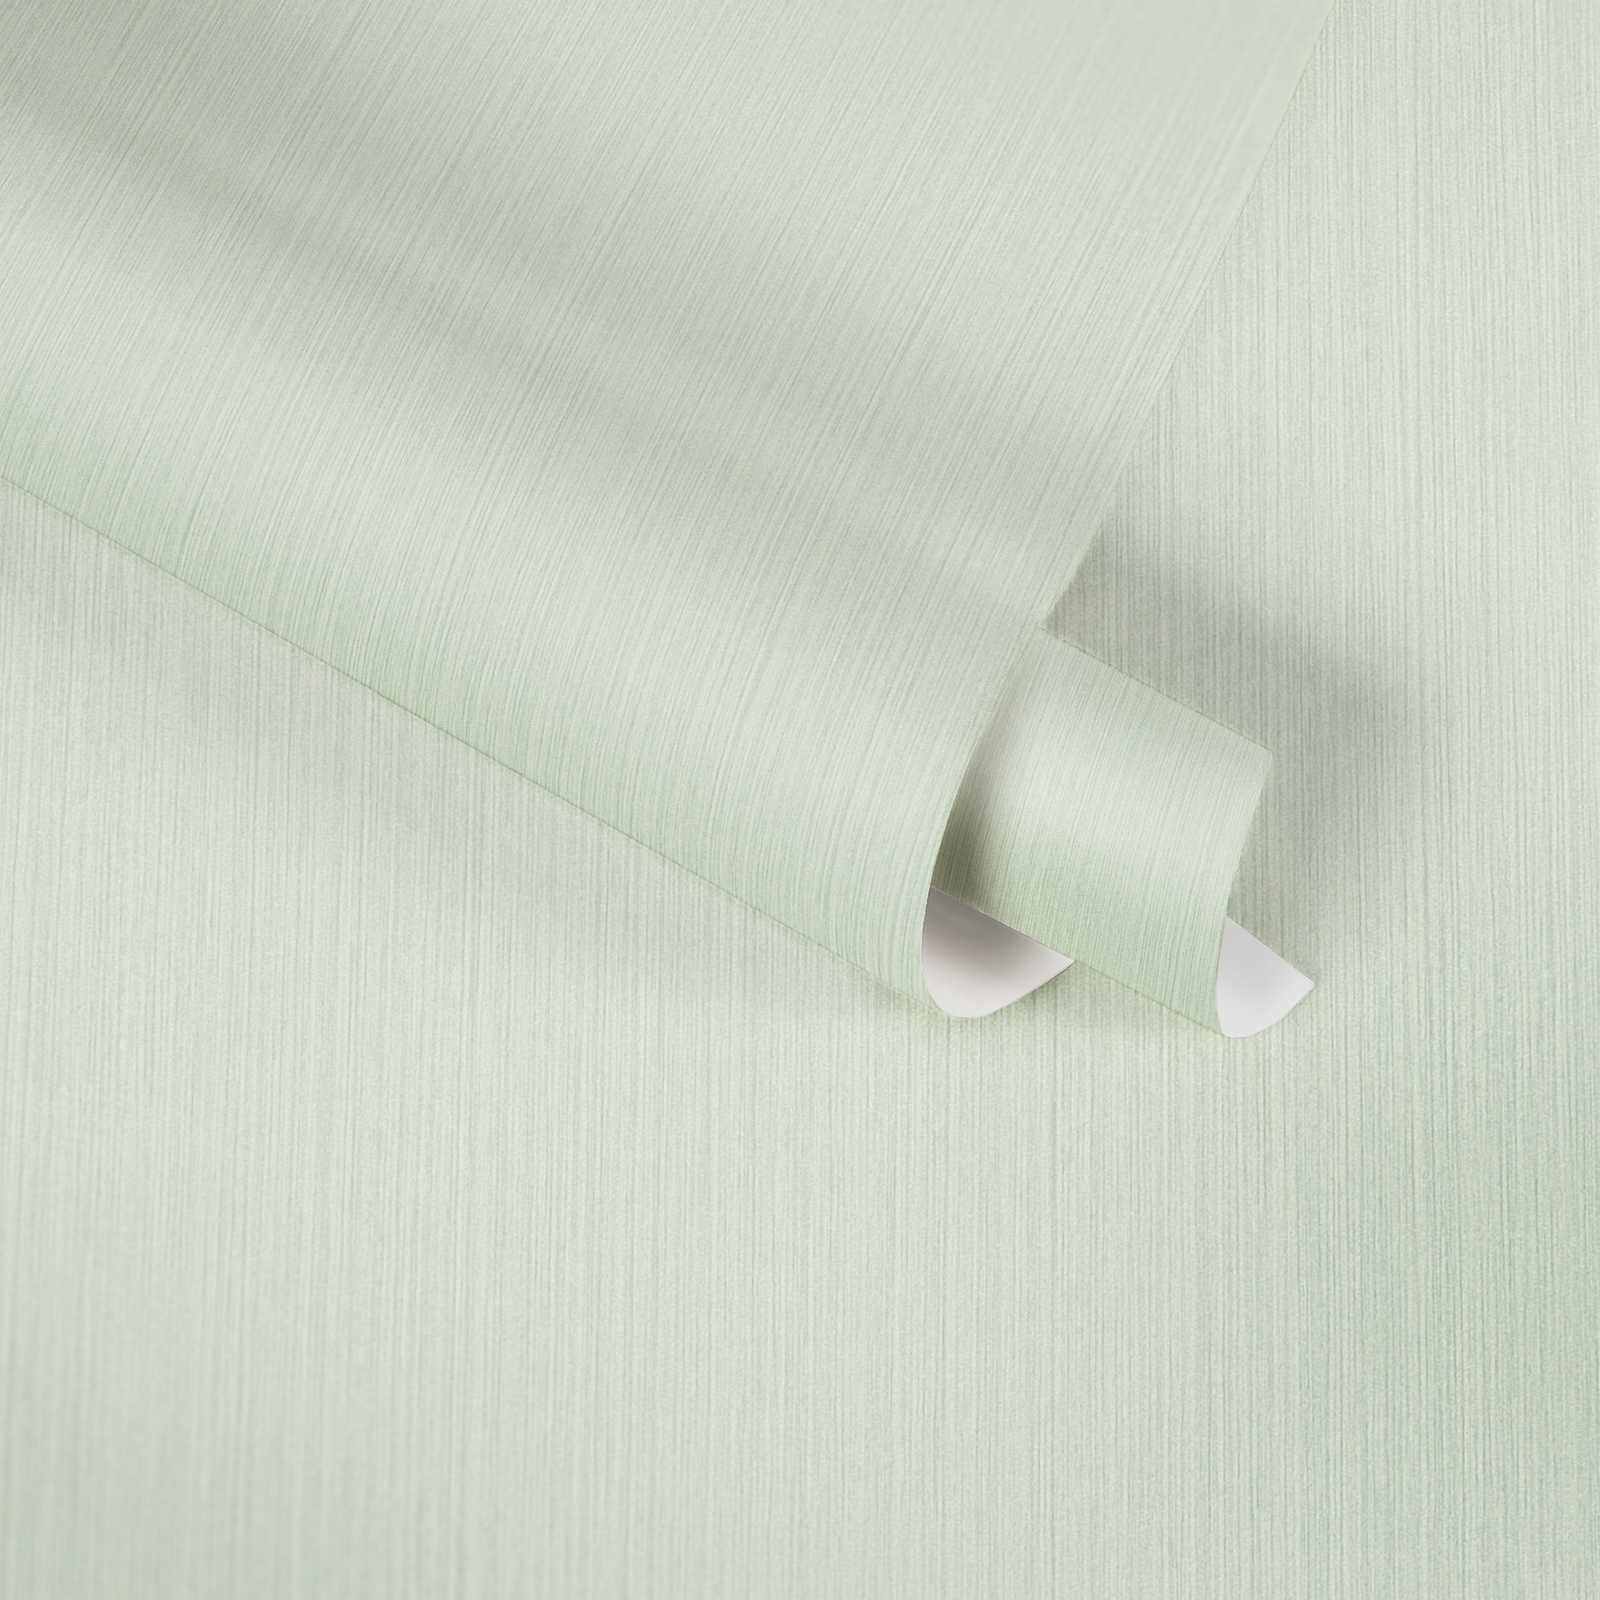             Effen behangpapier lichtgroen met gevlekt textieleffect van MICHALSKY
        